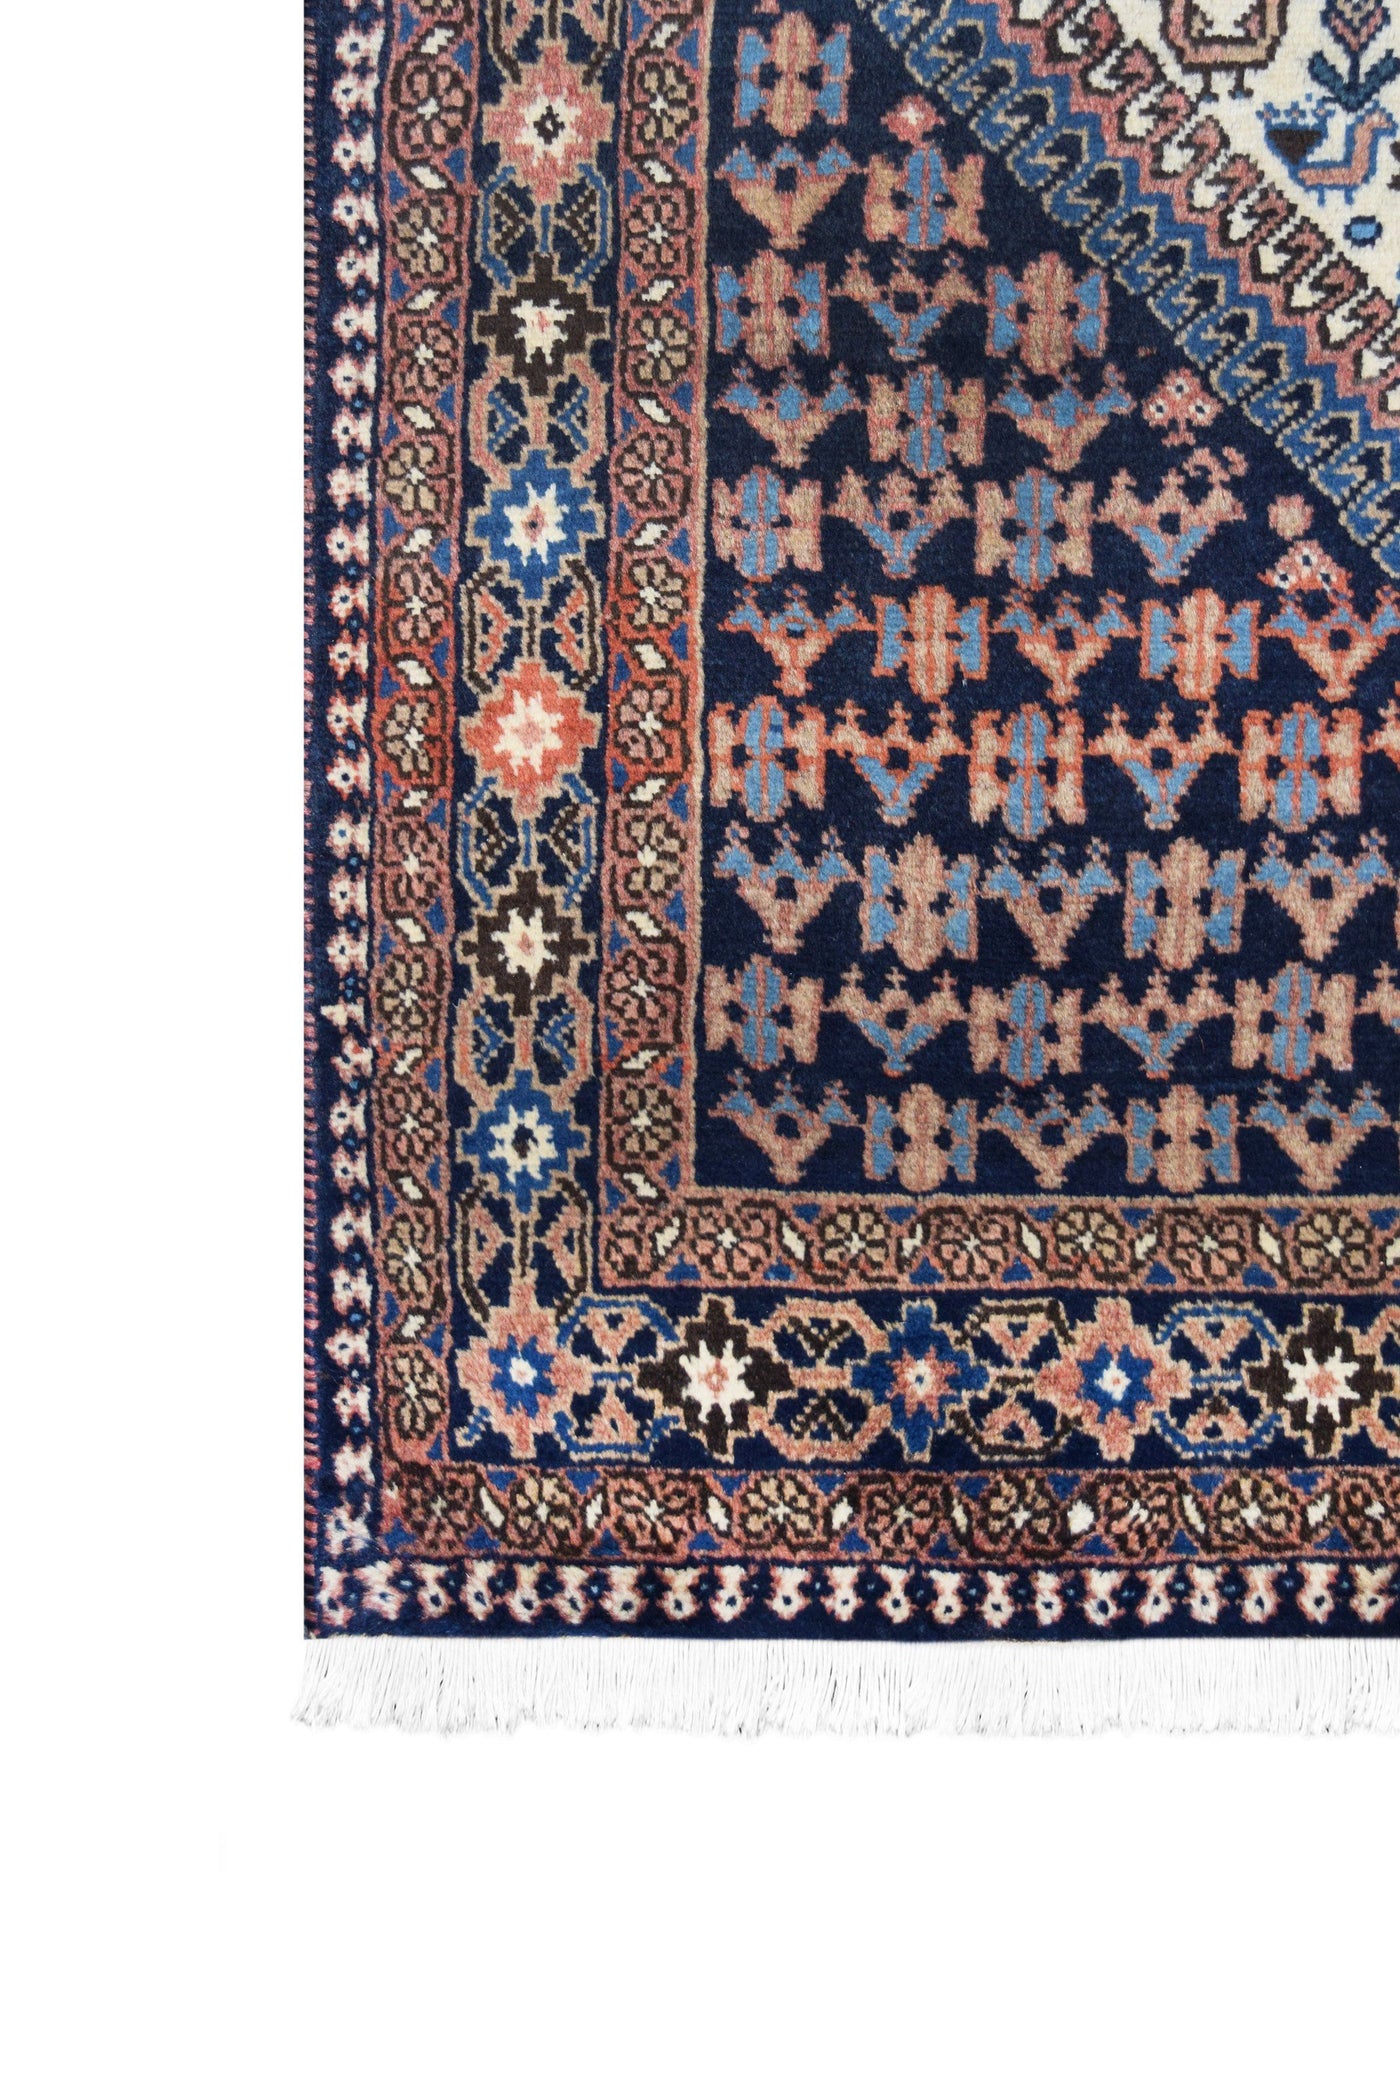 Persian Yalameh Rug handmade area rug Shop Tapis 